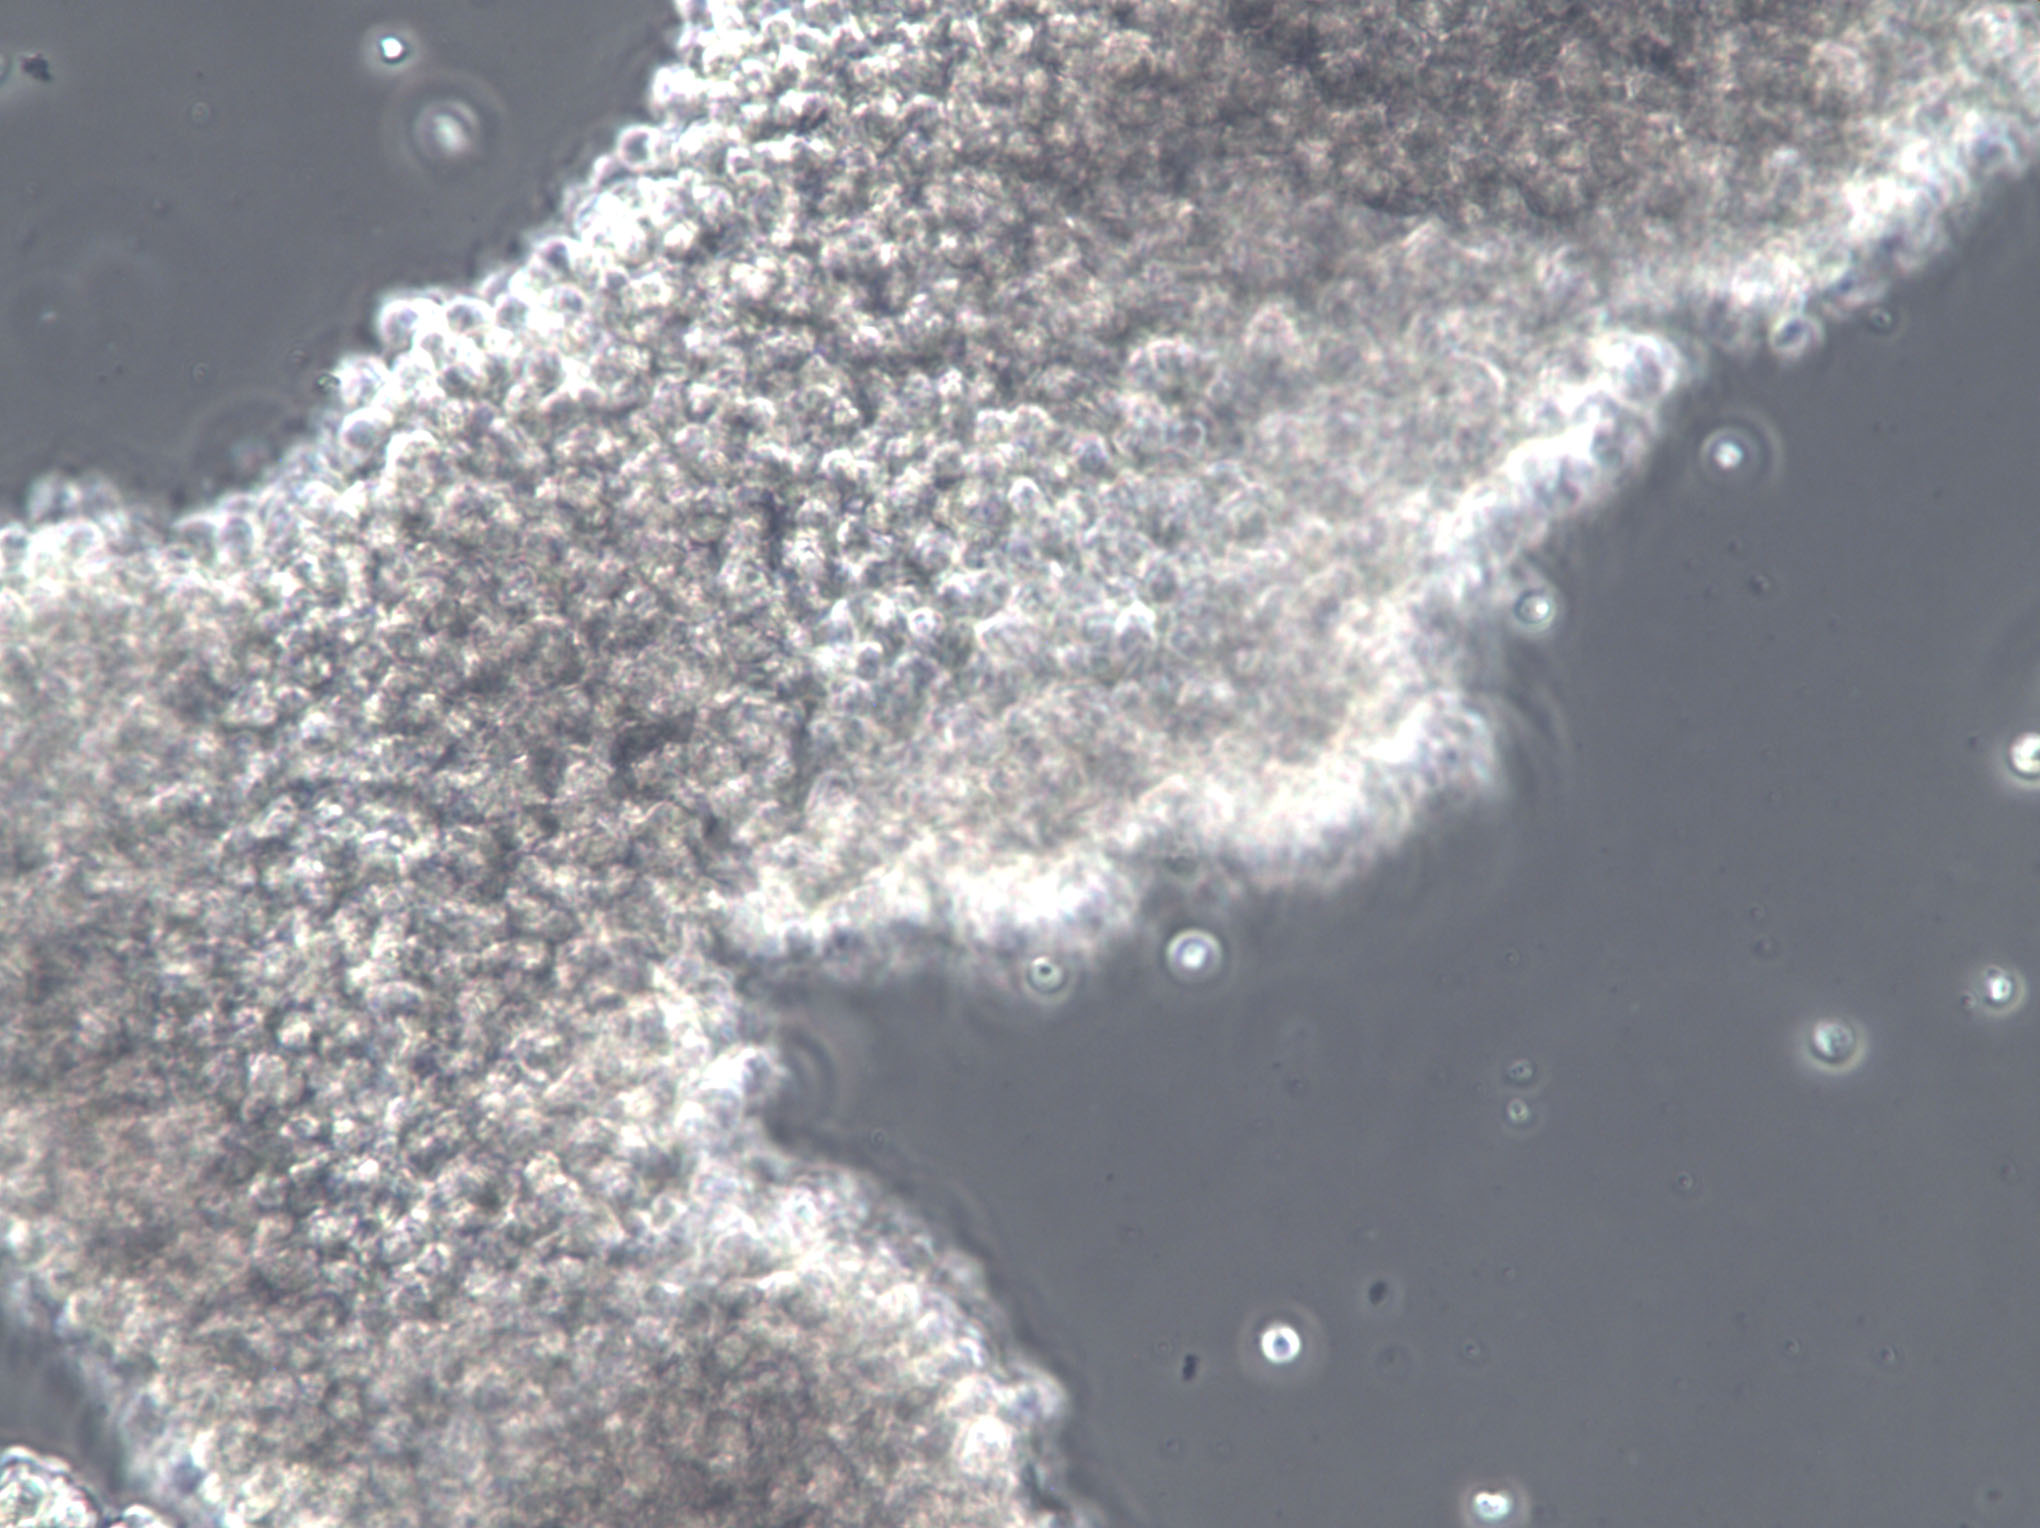 蜡状芽孢杆菌琼脂培养基基础